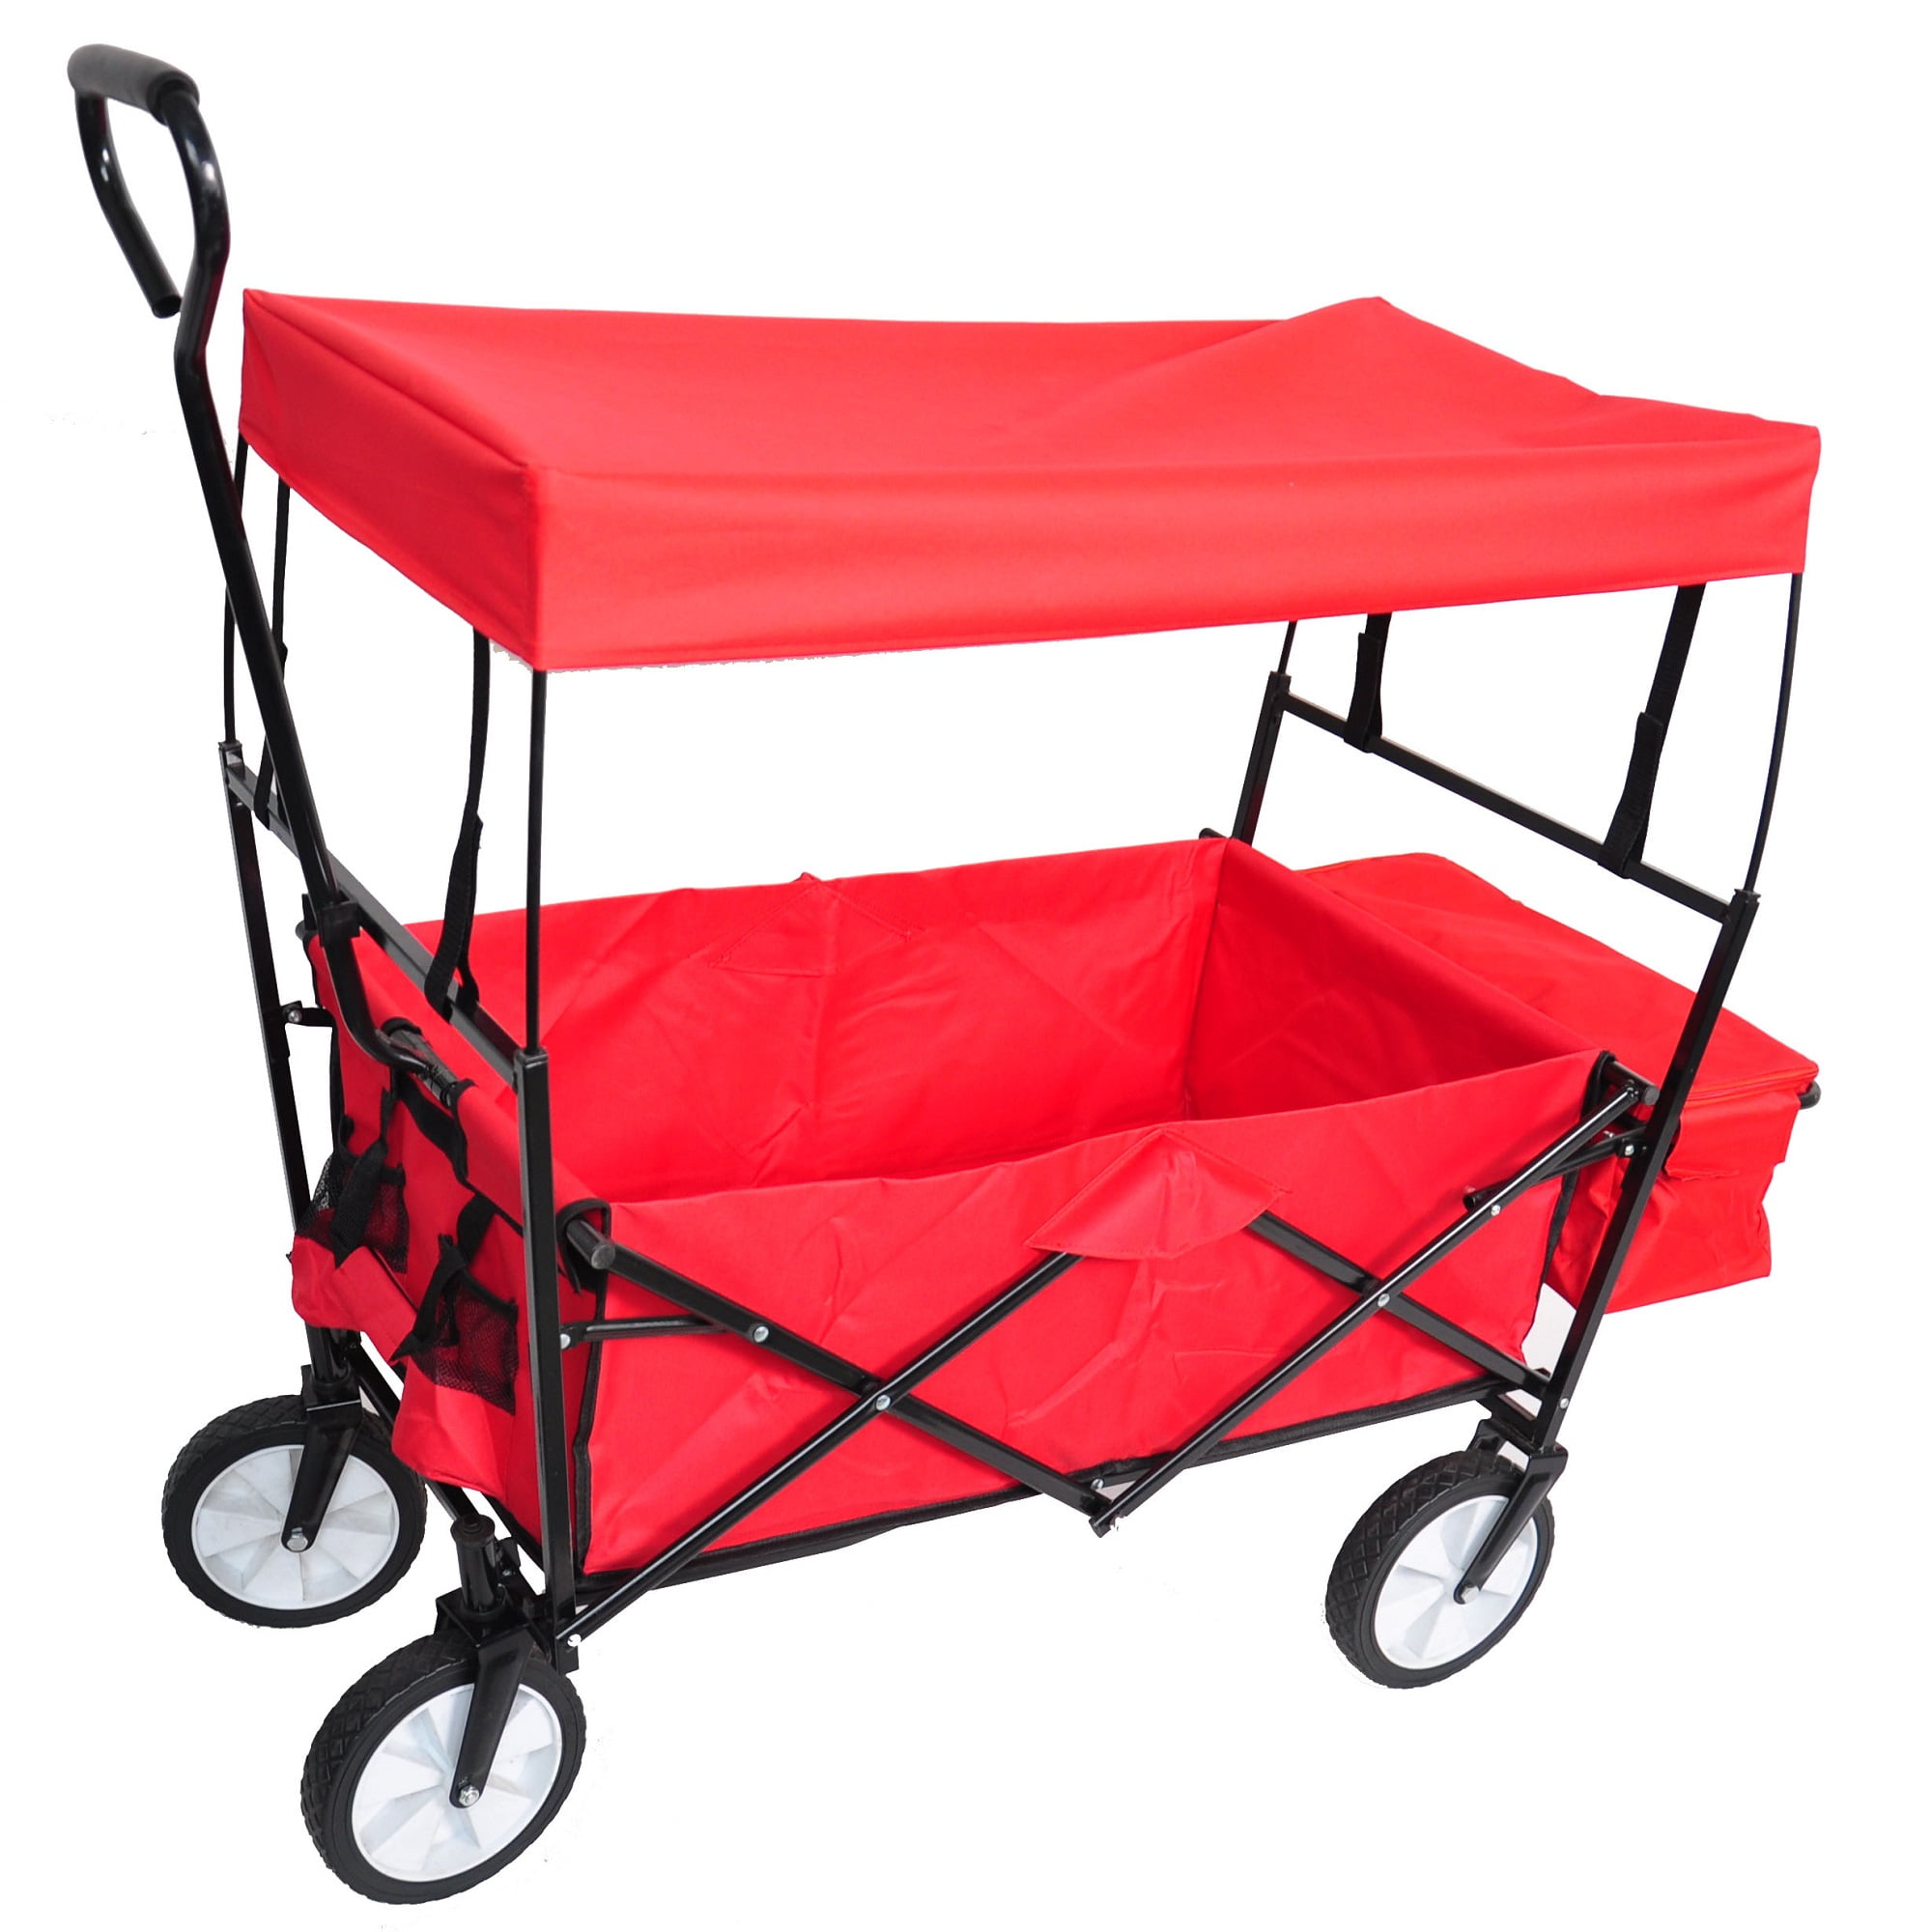 YiYan1 Folding Utility Wagon Garden Carts with Wheels Heavy Duty Wagon  Shopping Cart for Beach Sports Outdoor Camping Fishing BBQ Red